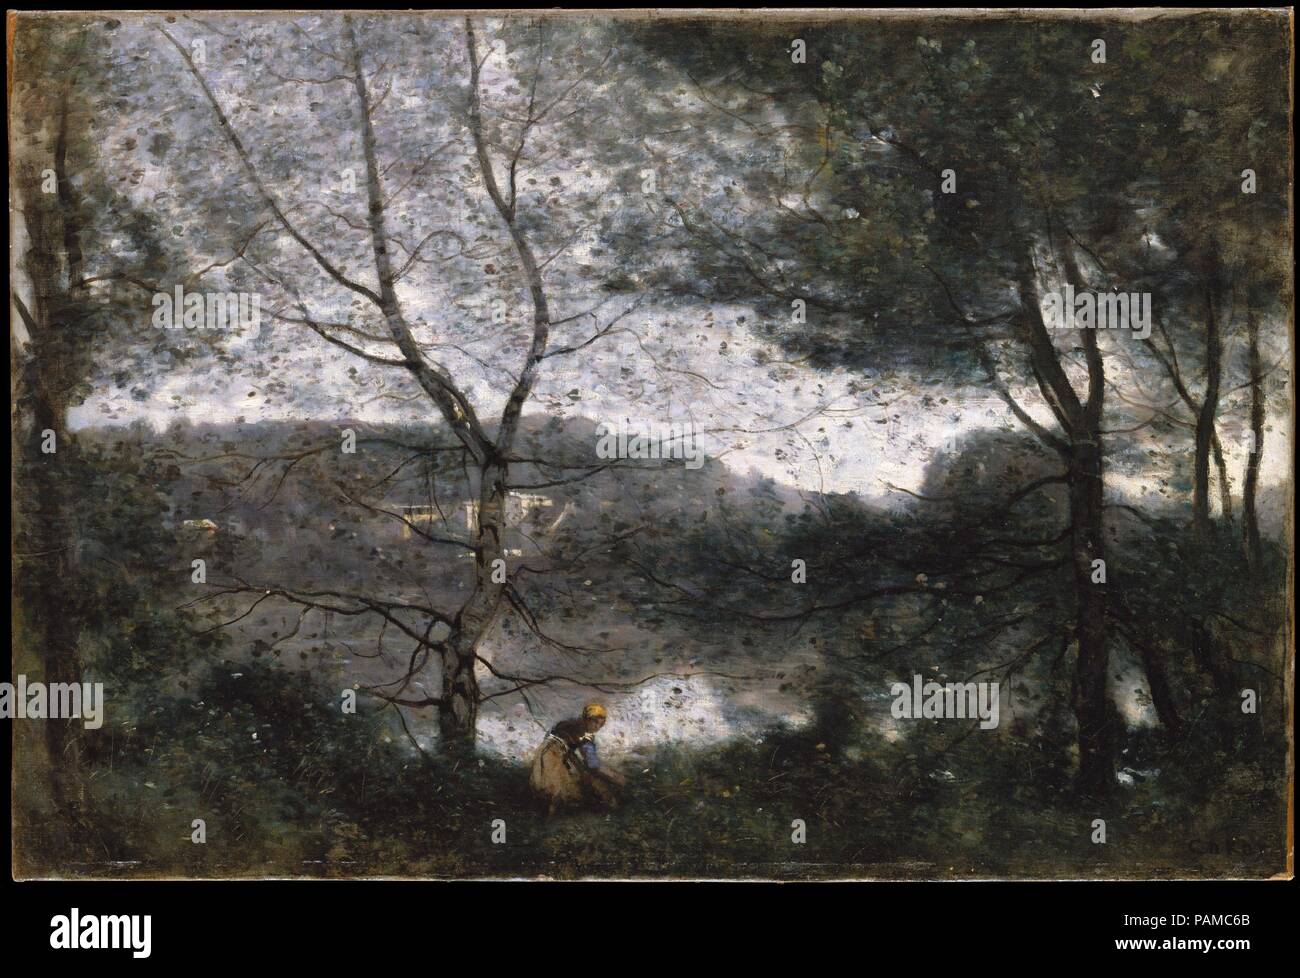 Ville-d'Avray. Artiste : Camille Corot (français, Paris 1796-1875 Paris). Dimensions : 21 5/8 x 31 1/2 in. (54,9 x 80 cm). Date : 1870. Corot souvent peint des vues sur le grand étang sur la propriété qu'il a hérité de ses parents à Ville-d'Avray. En répétant la scène, il a pris quelques libertés, en particulier avec l'arbre juste à gauche du centre. La silhouette de branches et de feuillage contre le ciel d'étain a conduit le biographe de Corot Alfred Robaut à assimiler ce travail à une toile d'araignée. Corot inclus initialement un enfant avec les bras tendus à côté de la femme paysanne accroupie, mais il semble avoir trouvé ce Banque D'Images